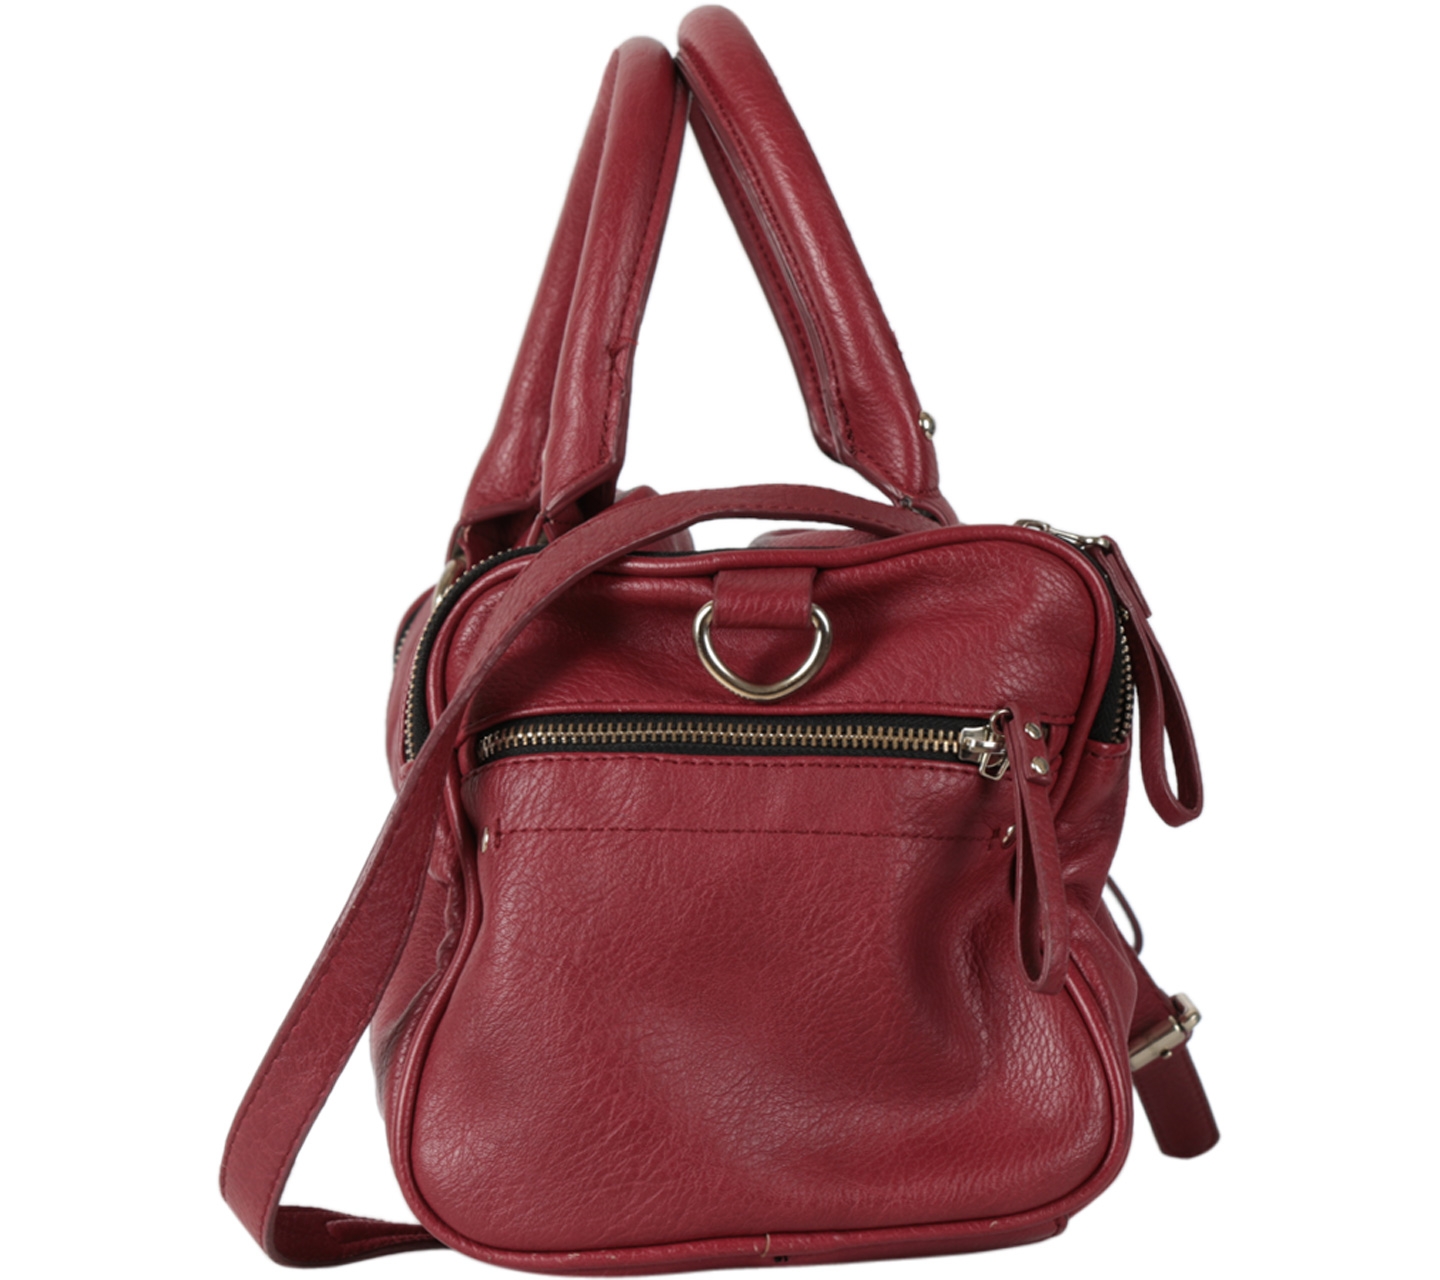 Zara Red Handbag